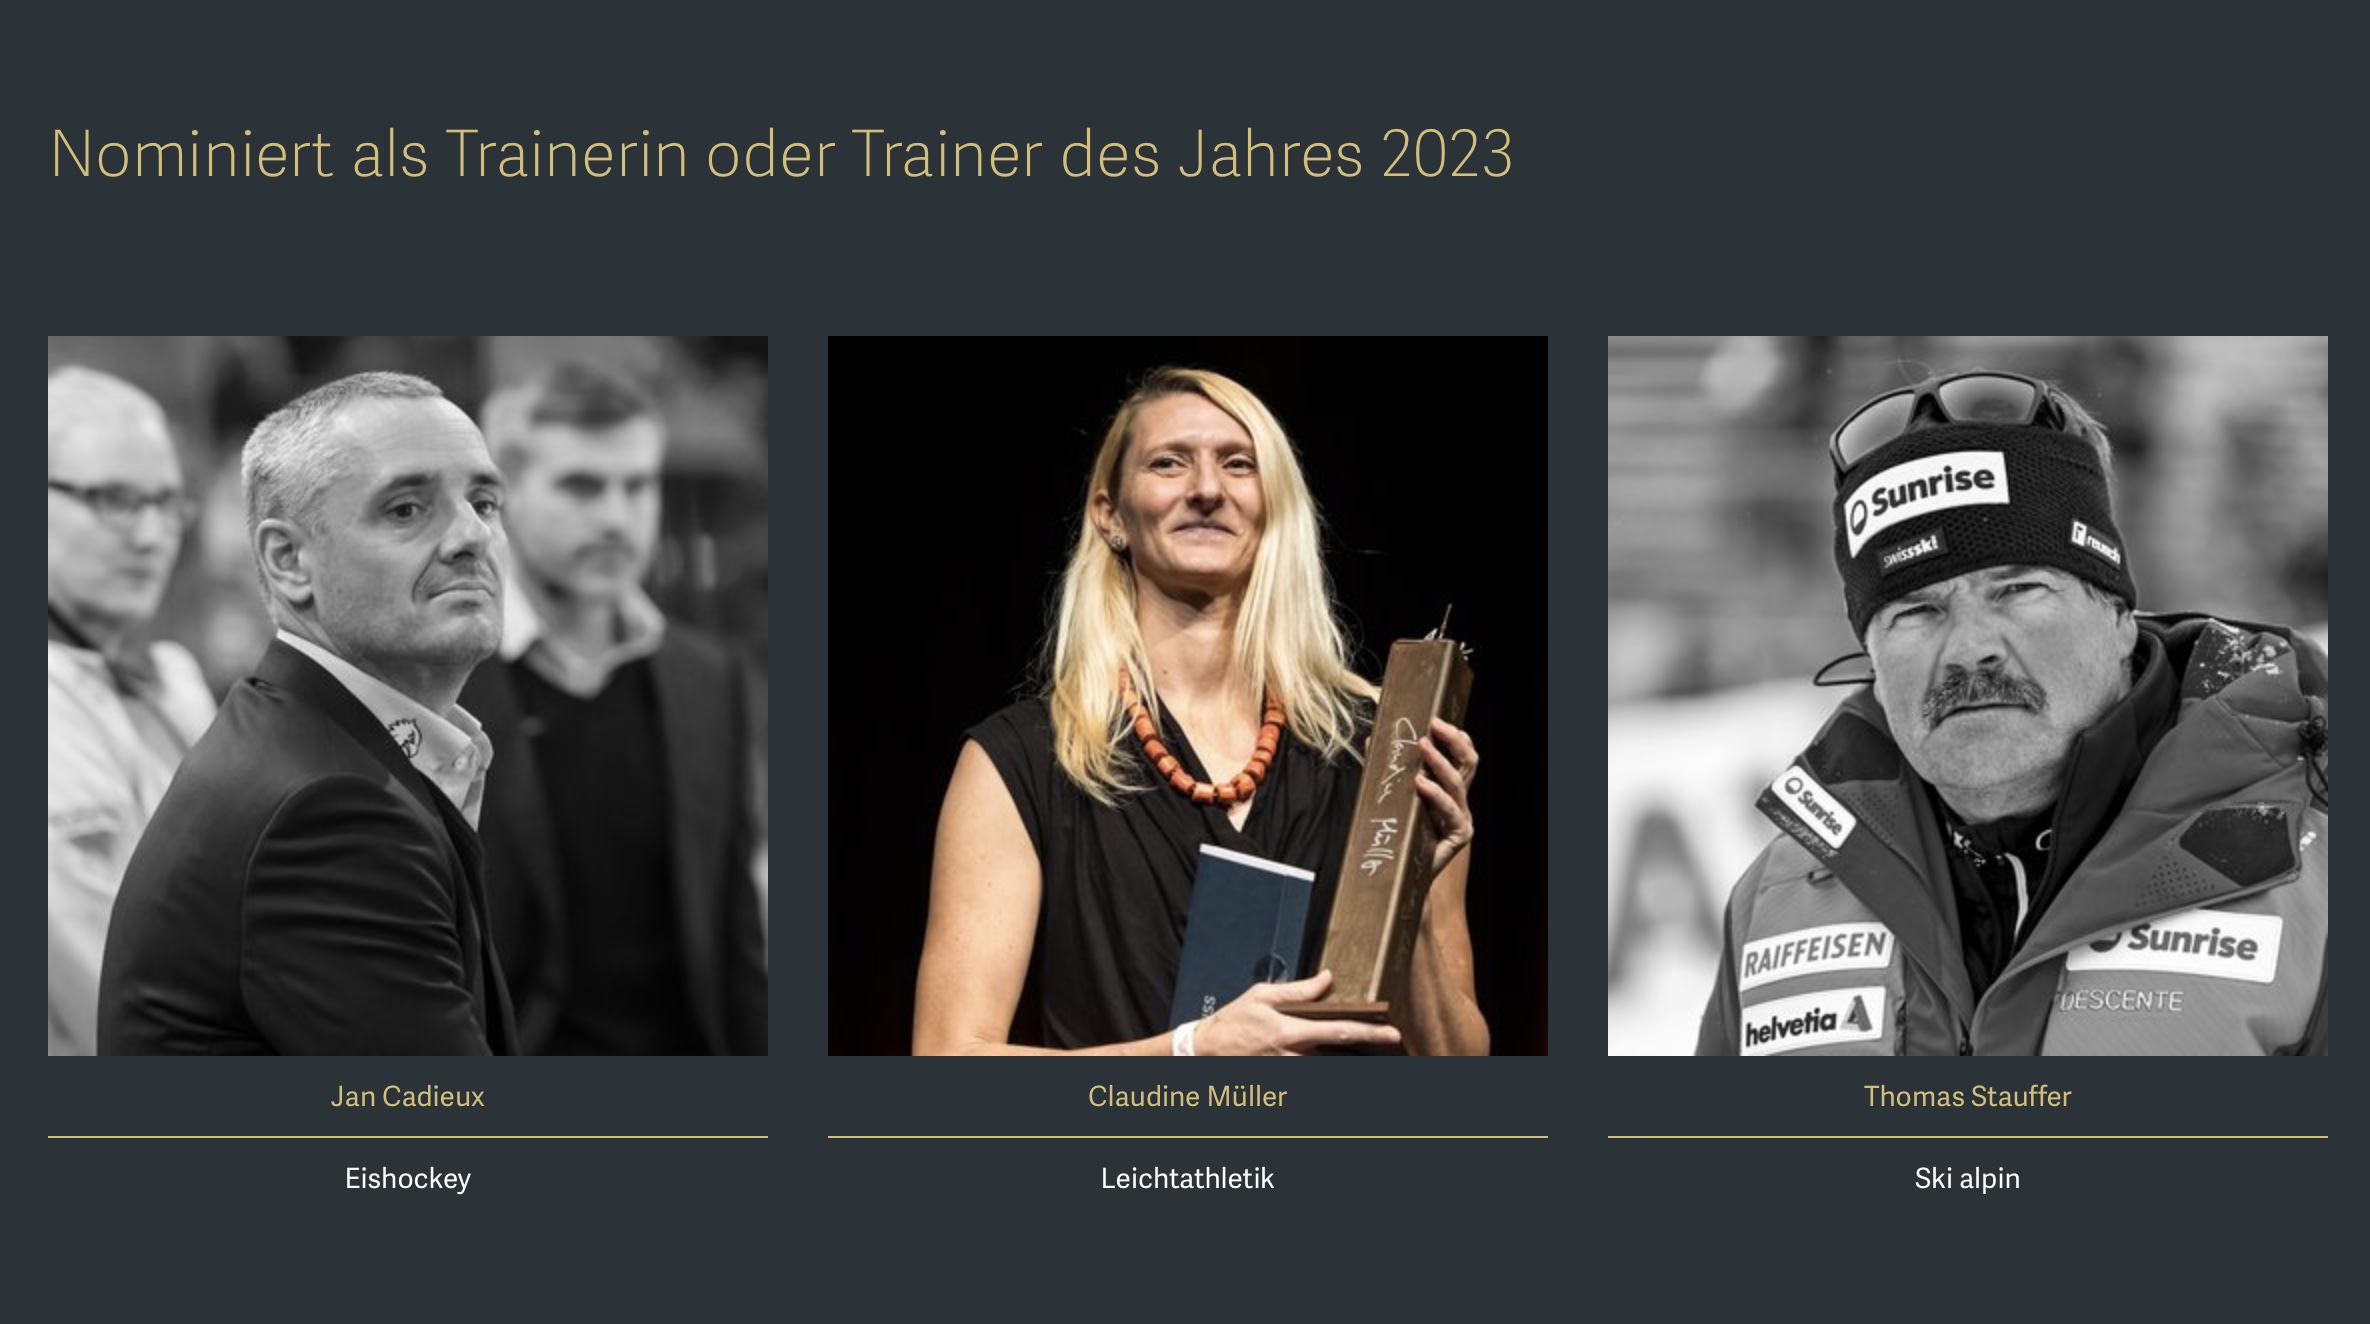 Claudine Müller für den Swiss Sports Award nominiert